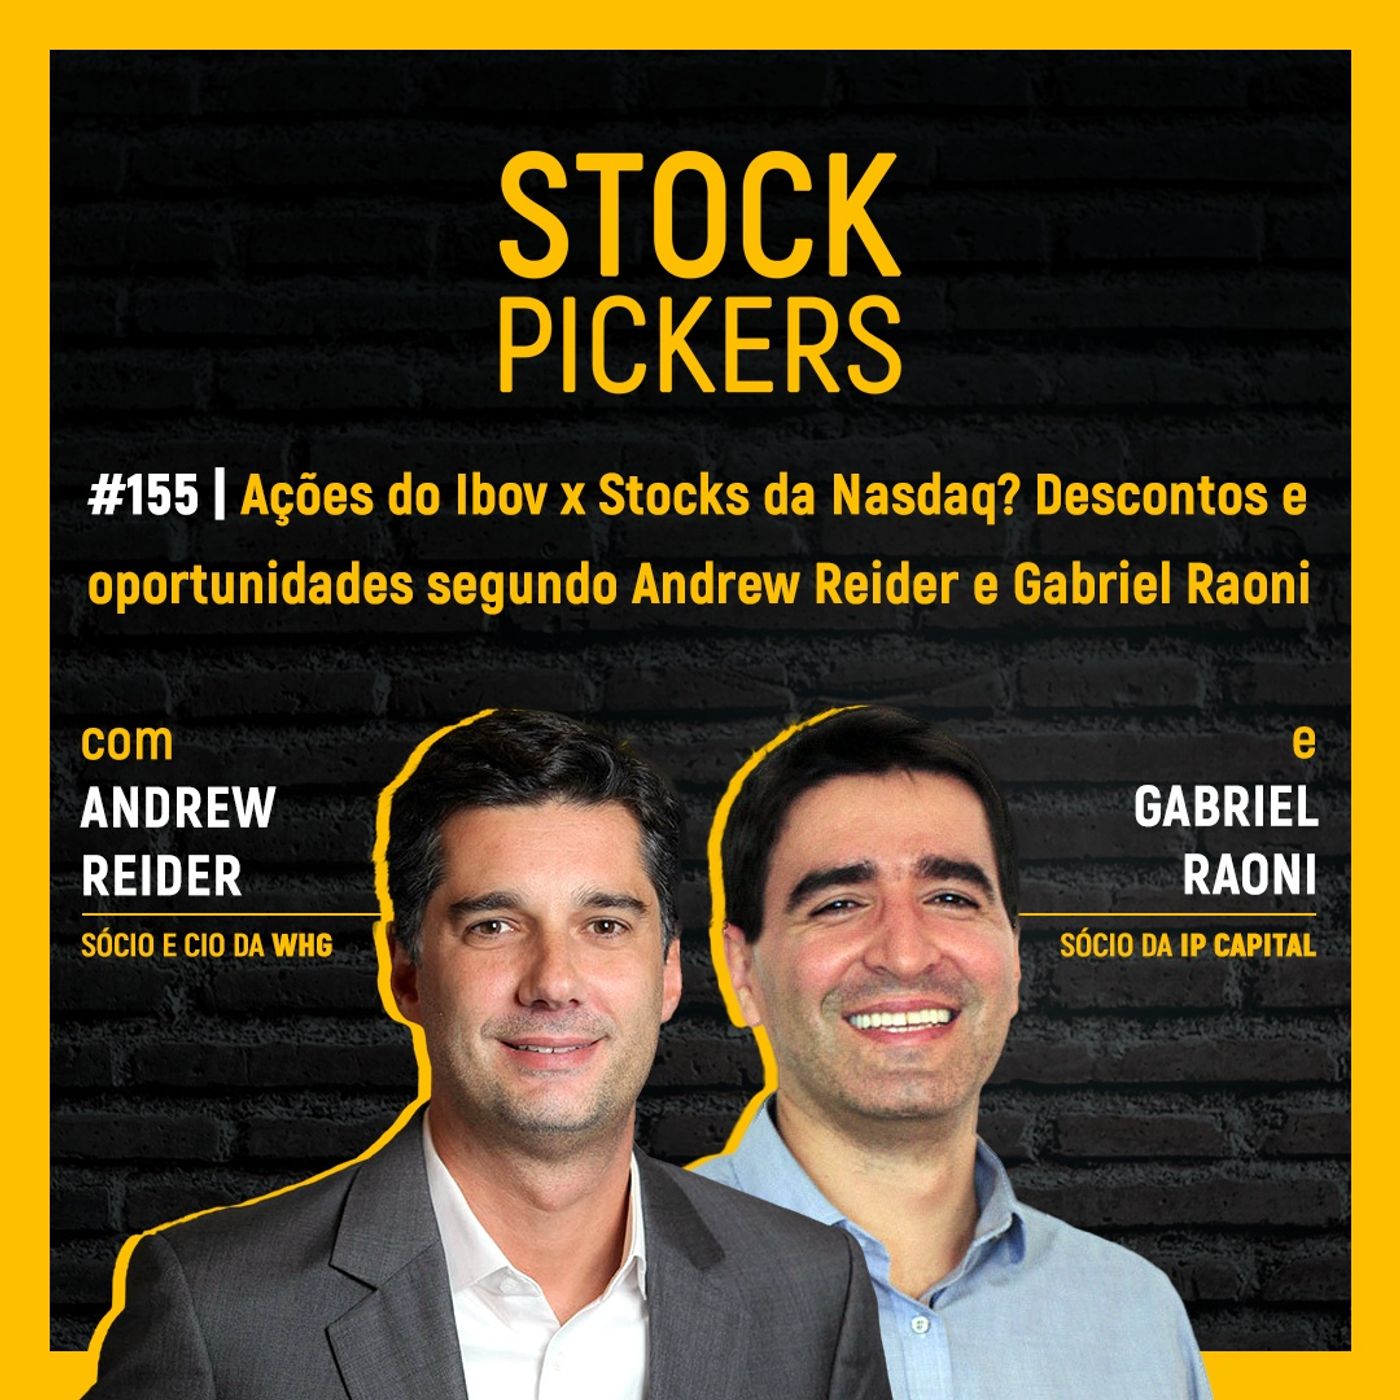 #155 Ações do Ibov x Stocks da Nasdaq? Descontos e oportunidades segundo Andrew Reider e Gabriel Raoni